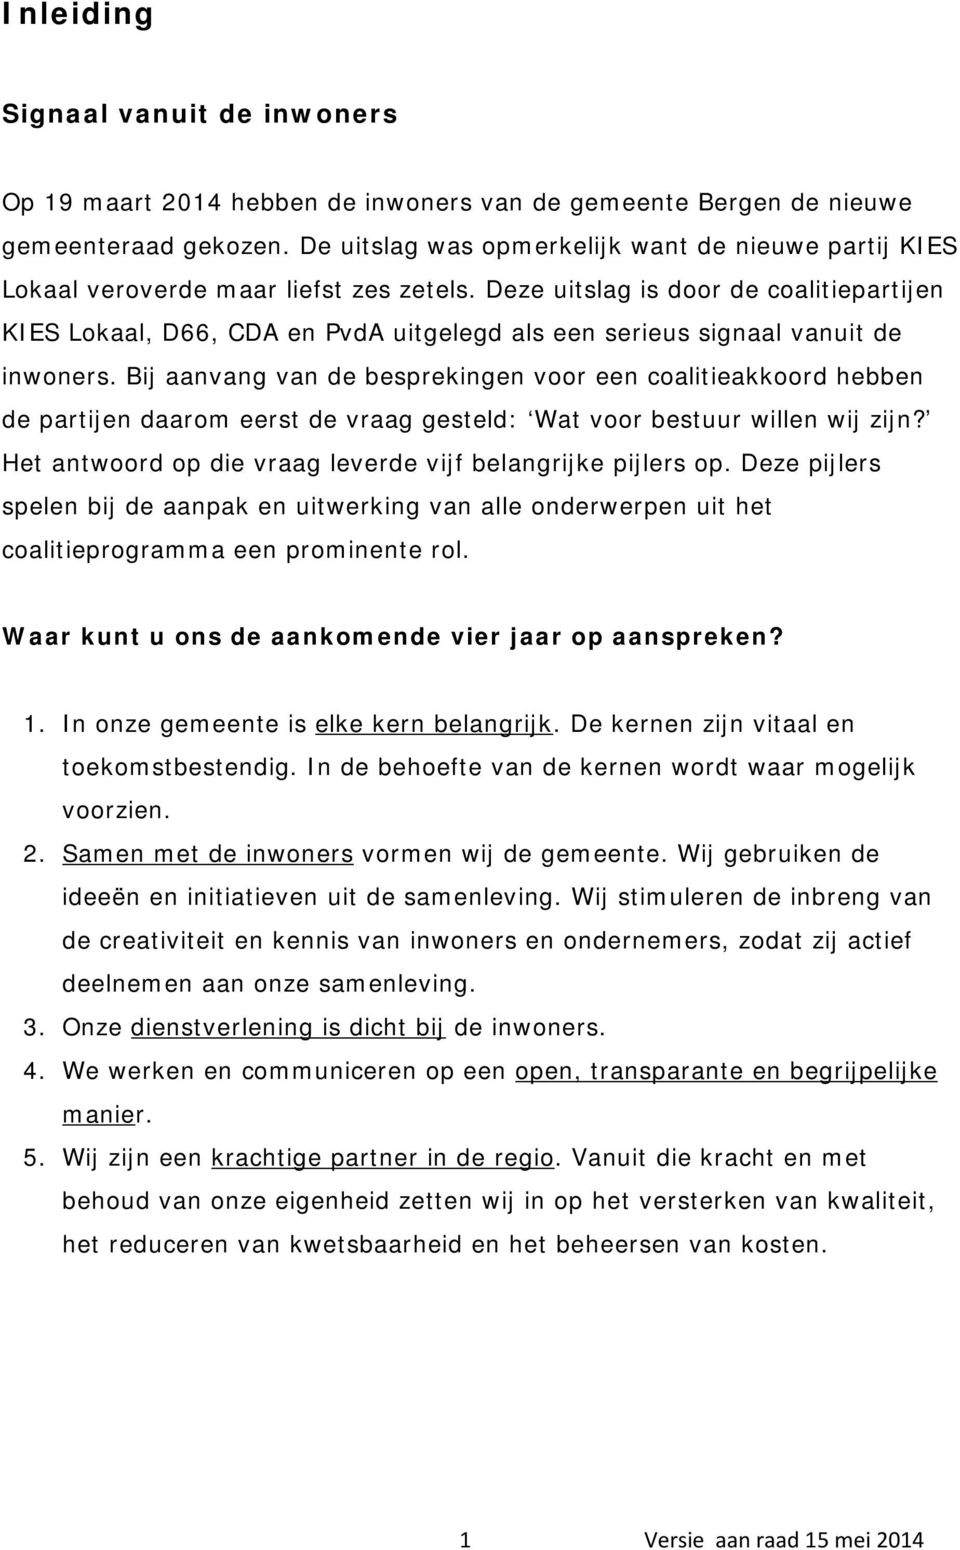 Deze uitslag is door de coalitiepartijen KIES Lokaal, D66, CDA en PvdA uitgelegd als een serieus signaal vanuit de inwoners.